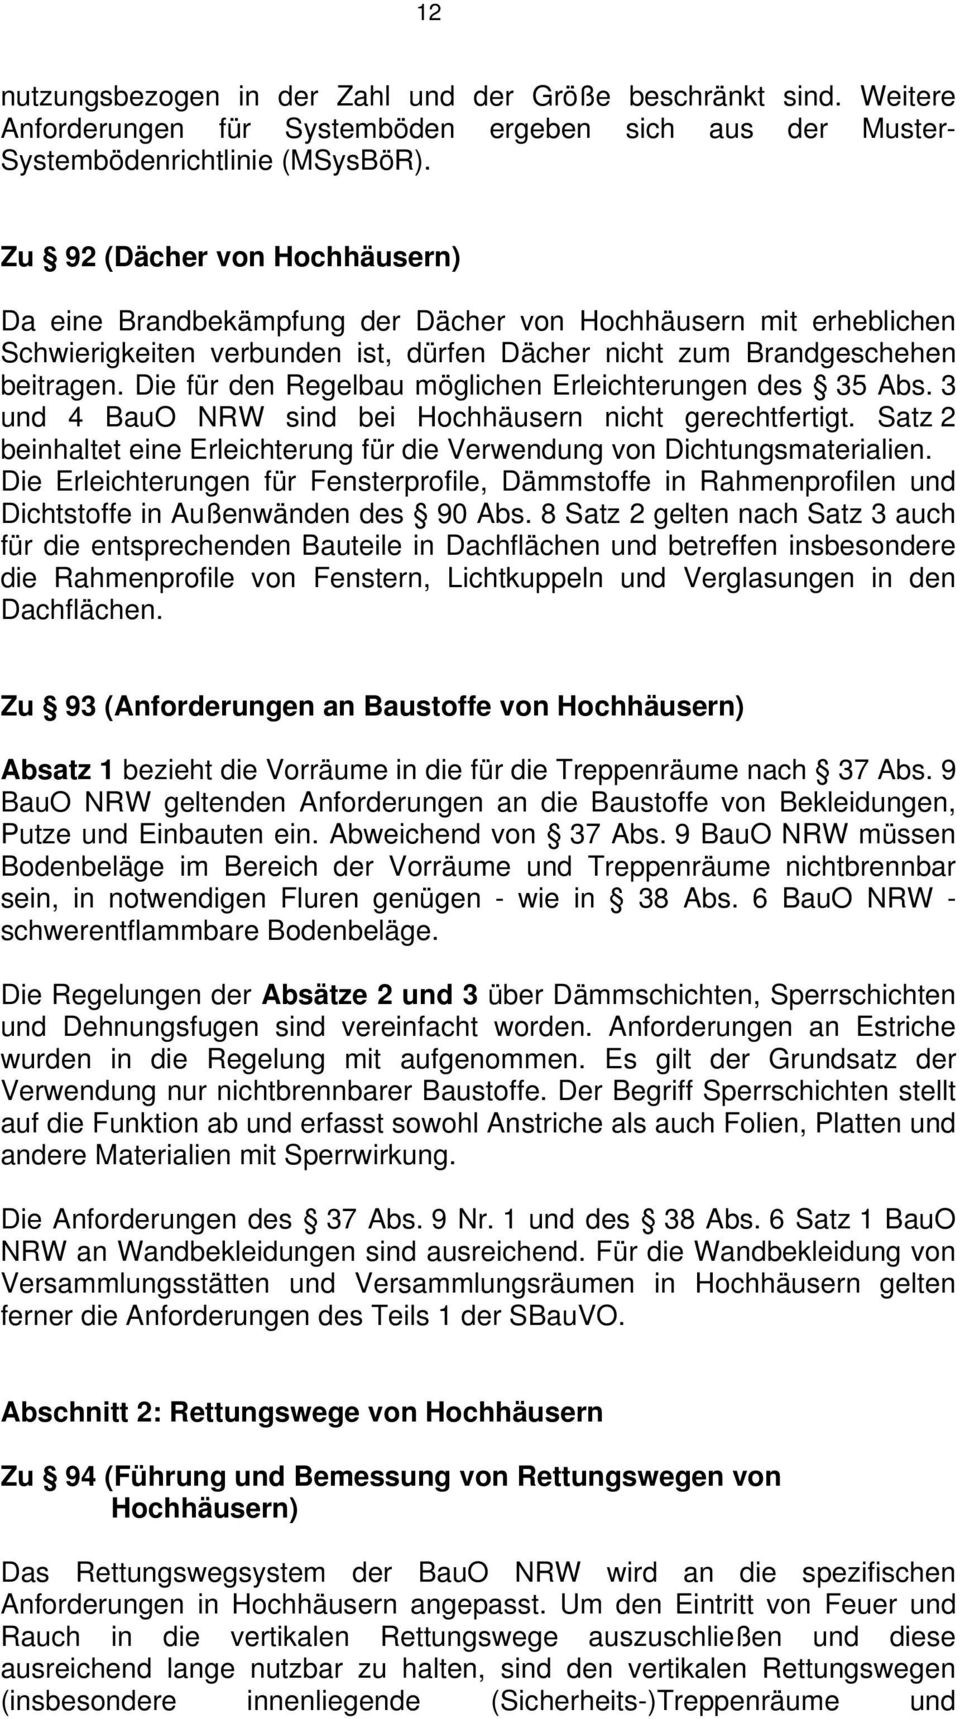 Die für den Regelbau möglichen Erleichterungen des 35 Abs. 3 und 4 BauO NRW sind bei Hochhäusern nicht gerechtfertigt. Satz 2 beinhaltet eine Erleichterung für die Verwendung von Dichtungsmaterialien.